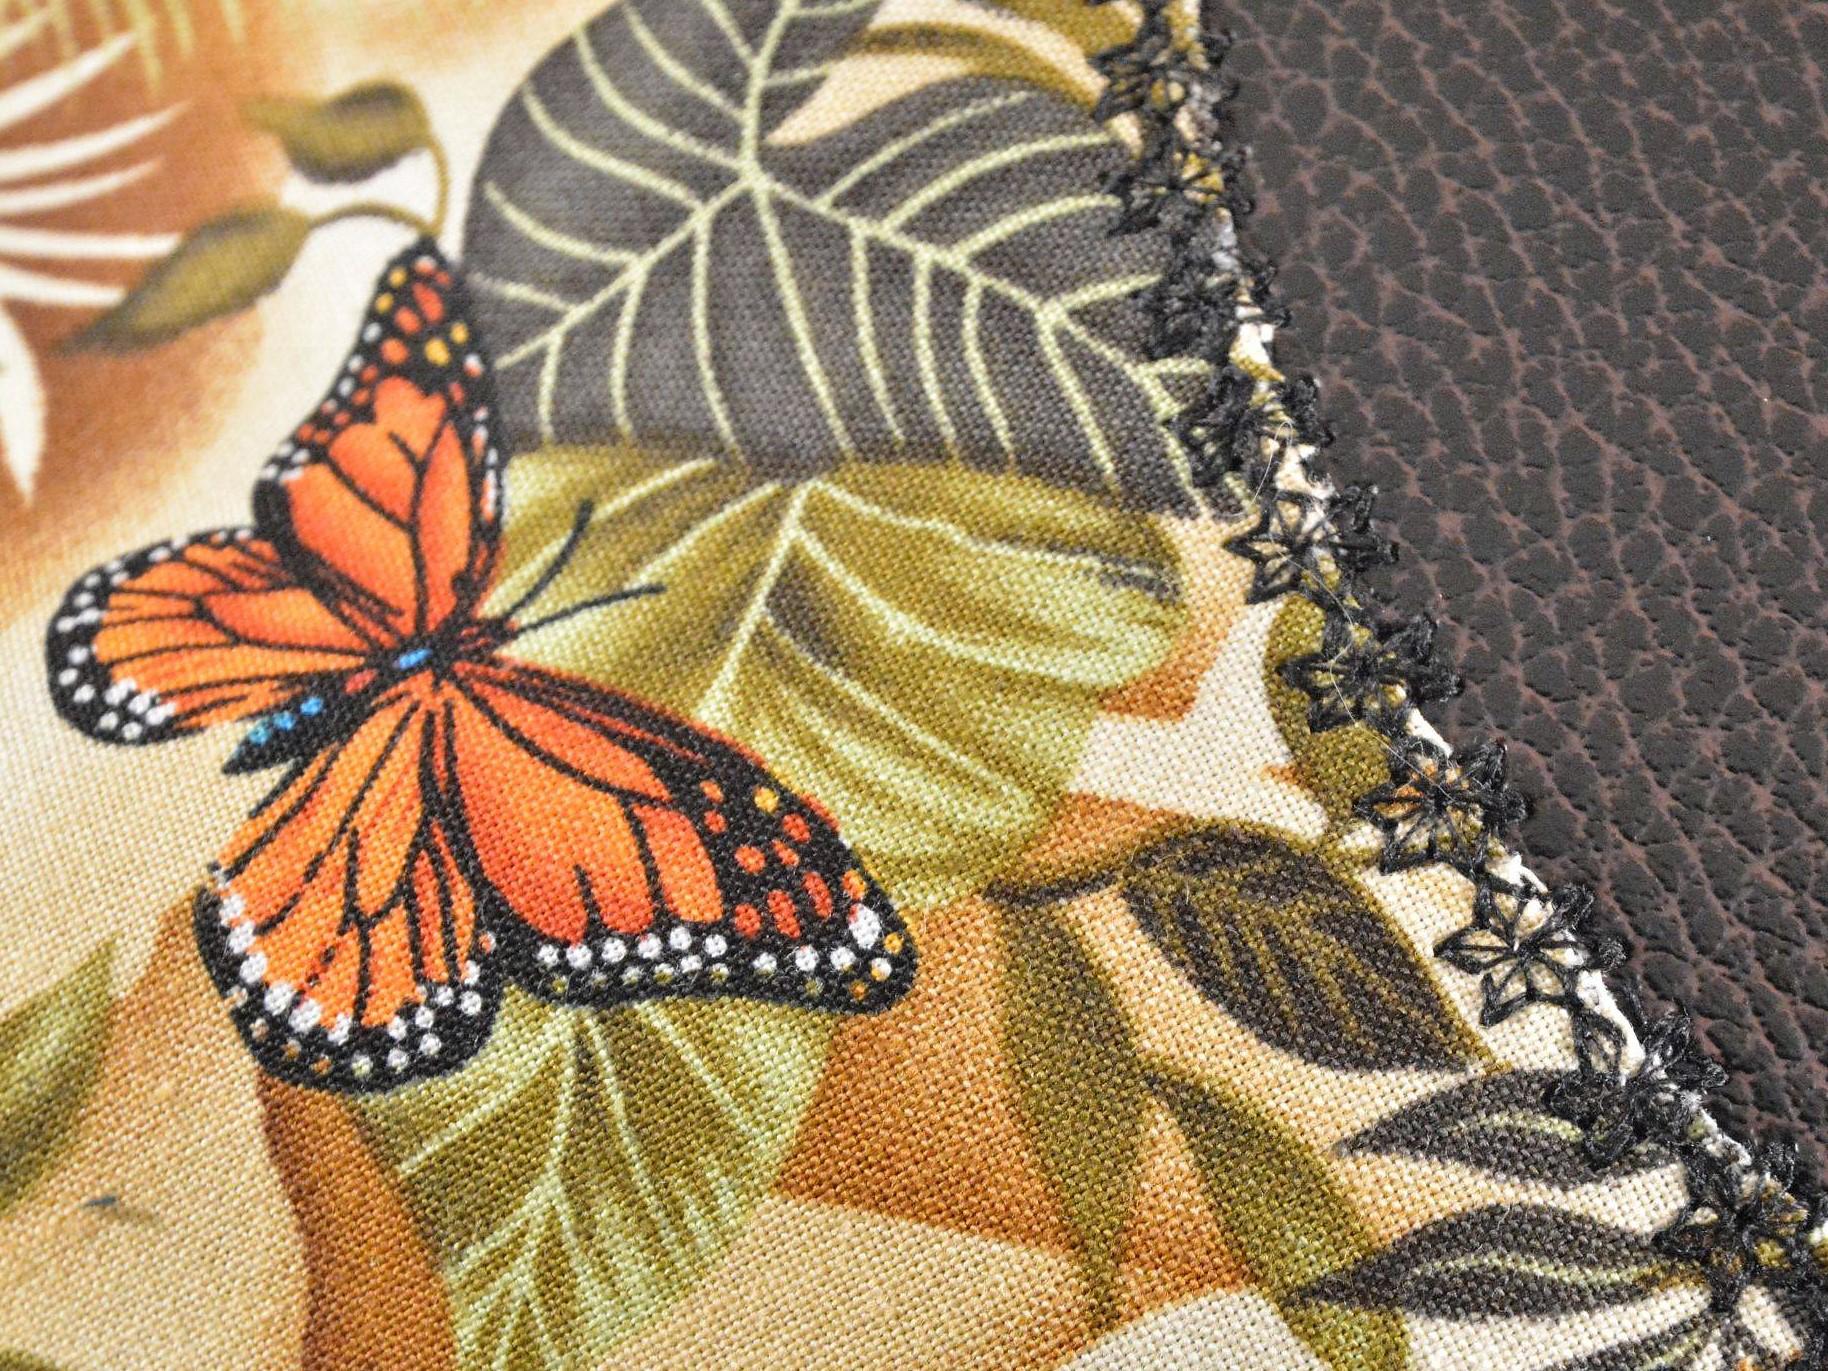 Papillons details